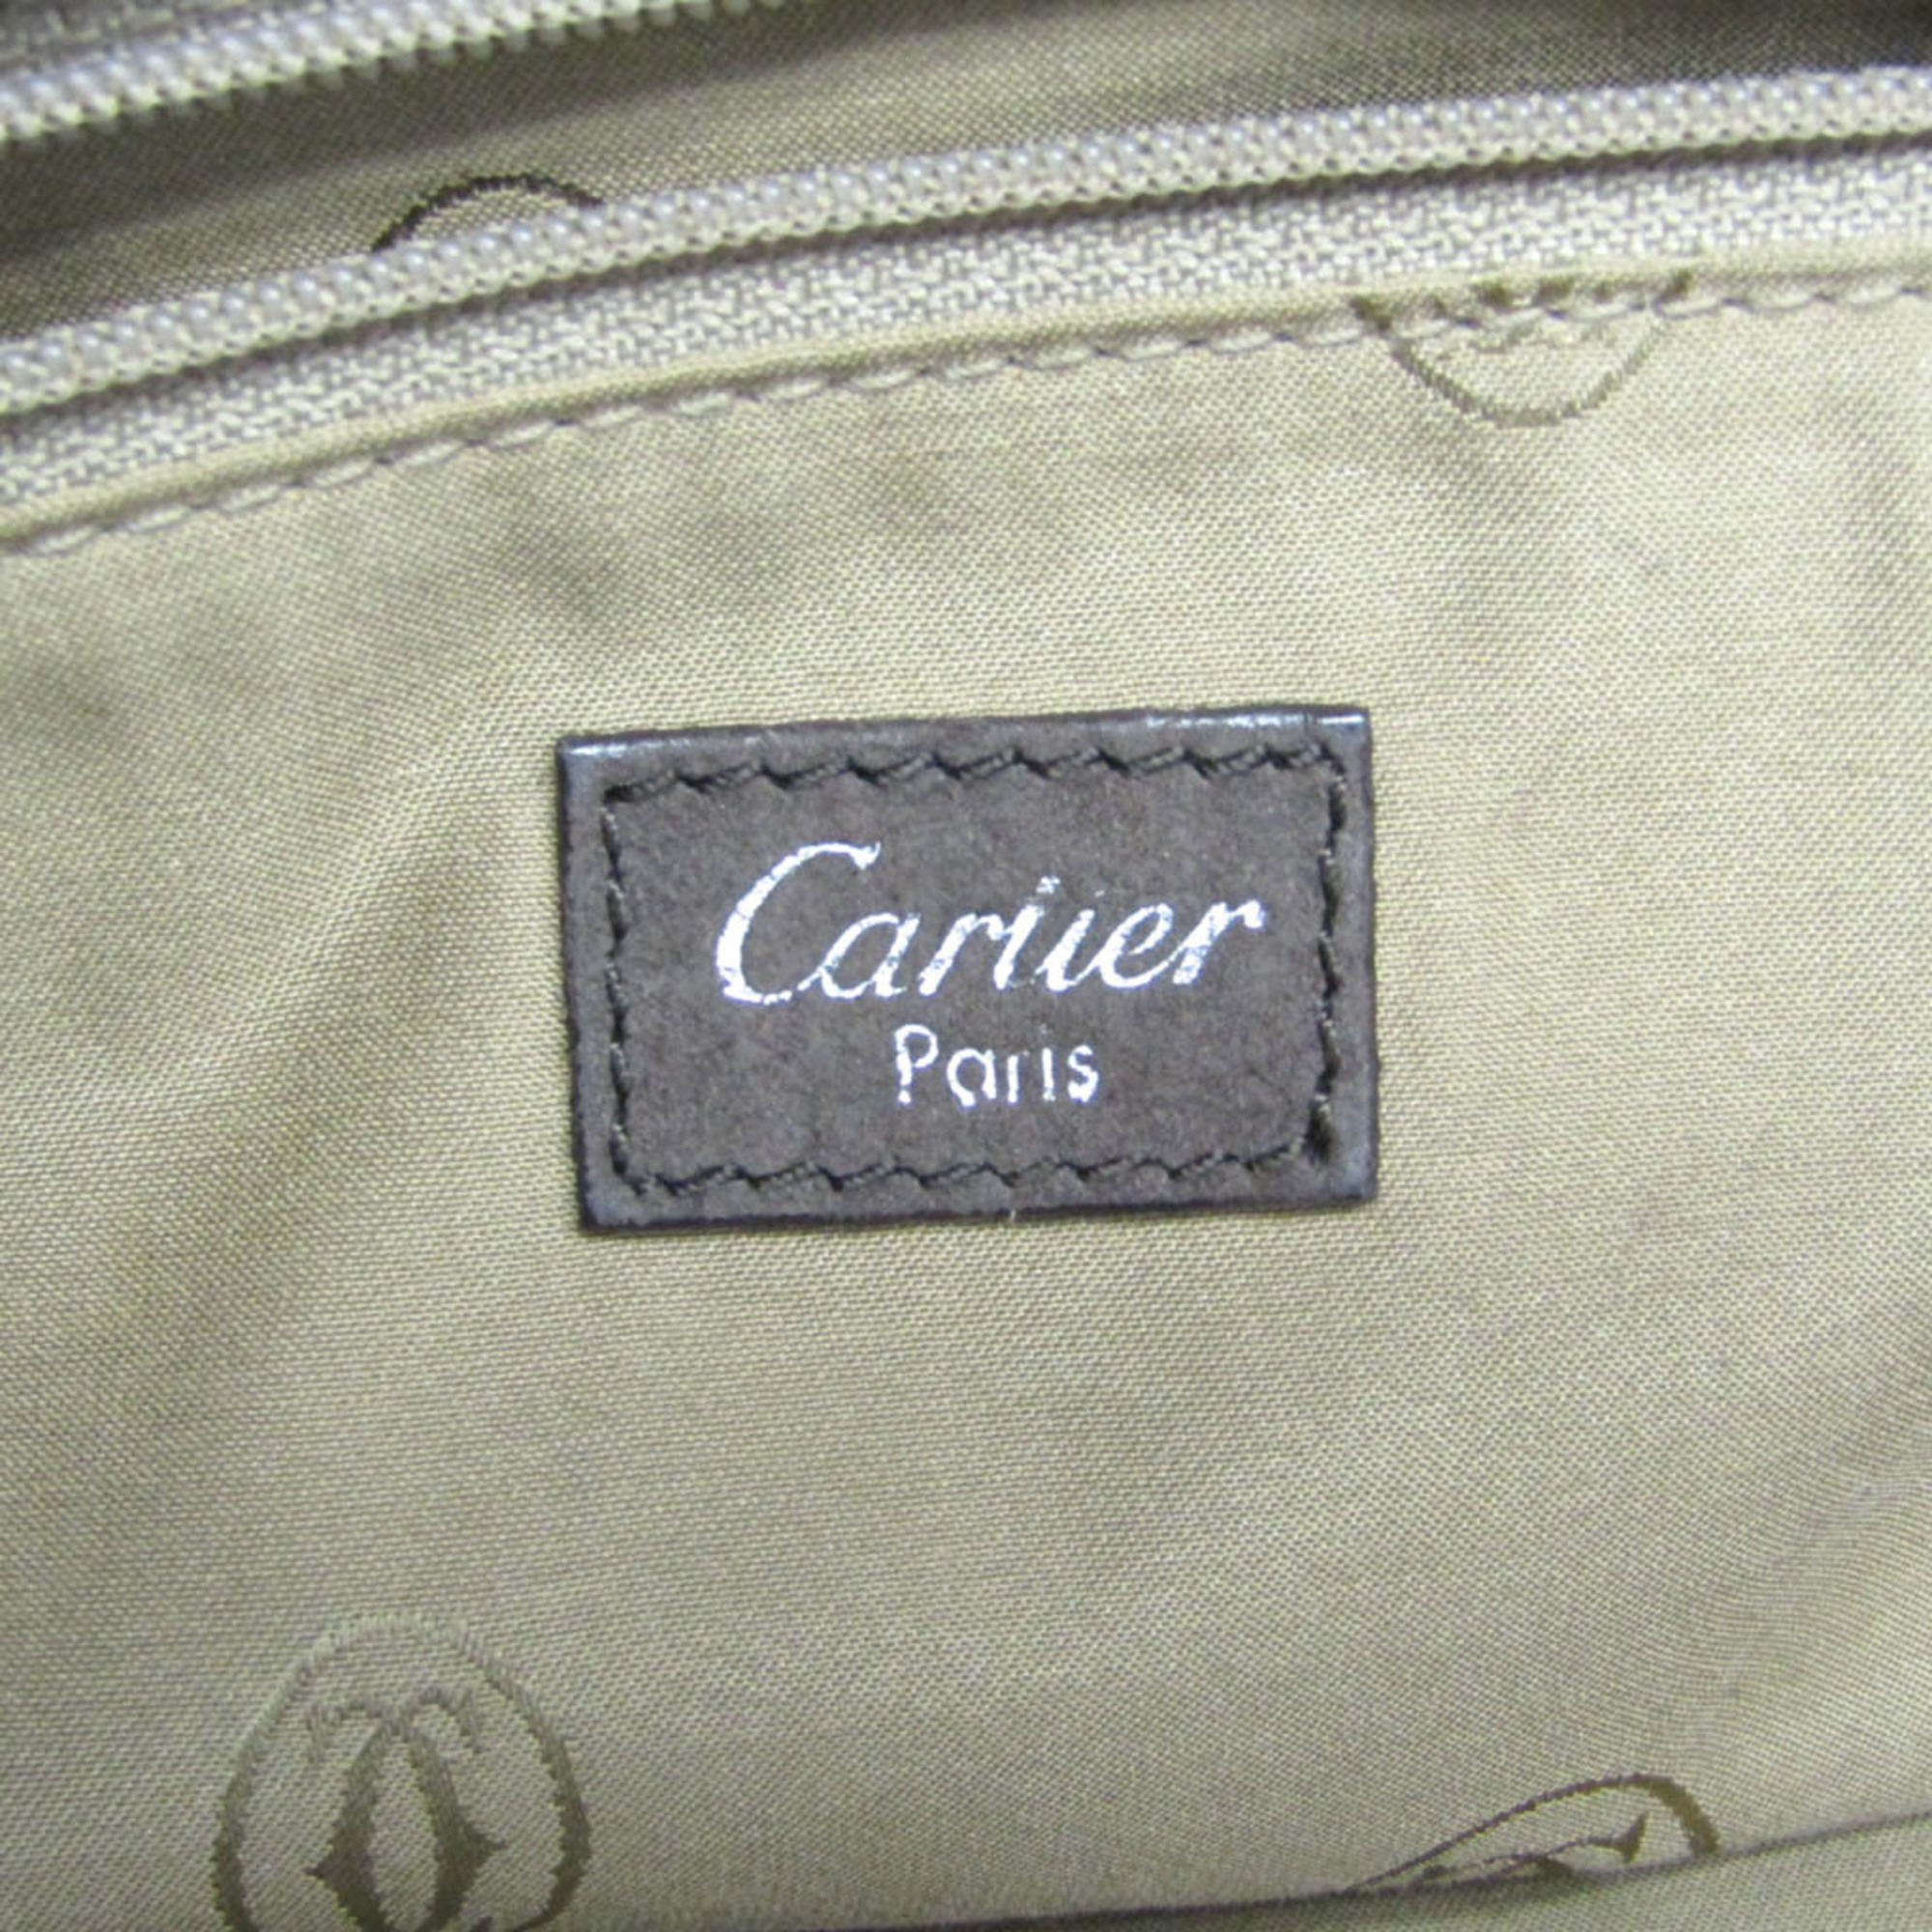 カルティエ(Cartier) マルチェロ ウォータースネイク レディース レザー,レザー ハンドバッグ,ショルダーバッグ ダークブラウン